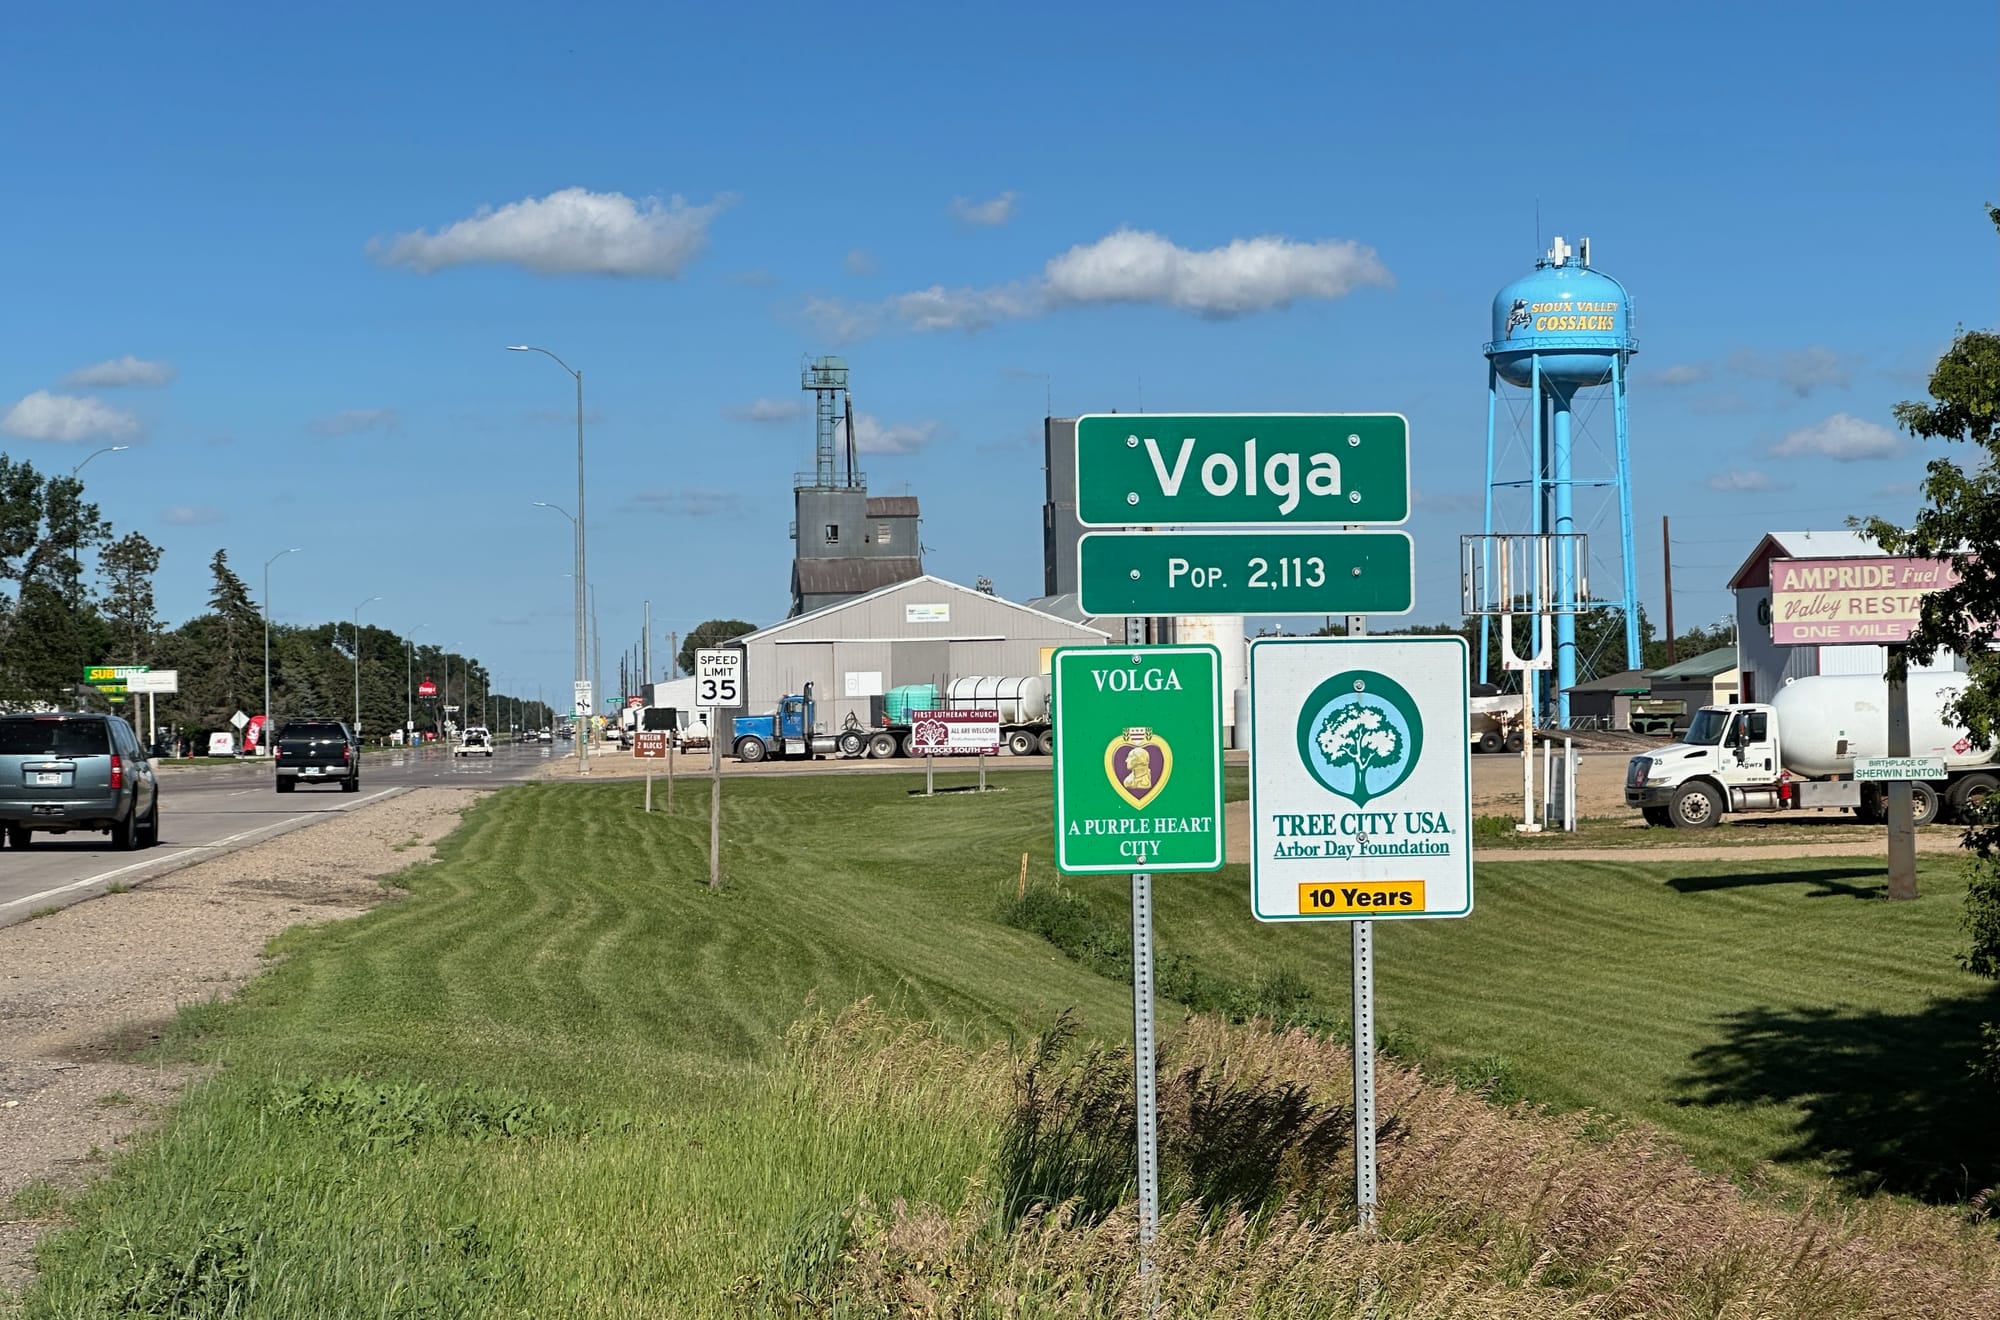 Volga, South Dakota sign welcoming visitors 